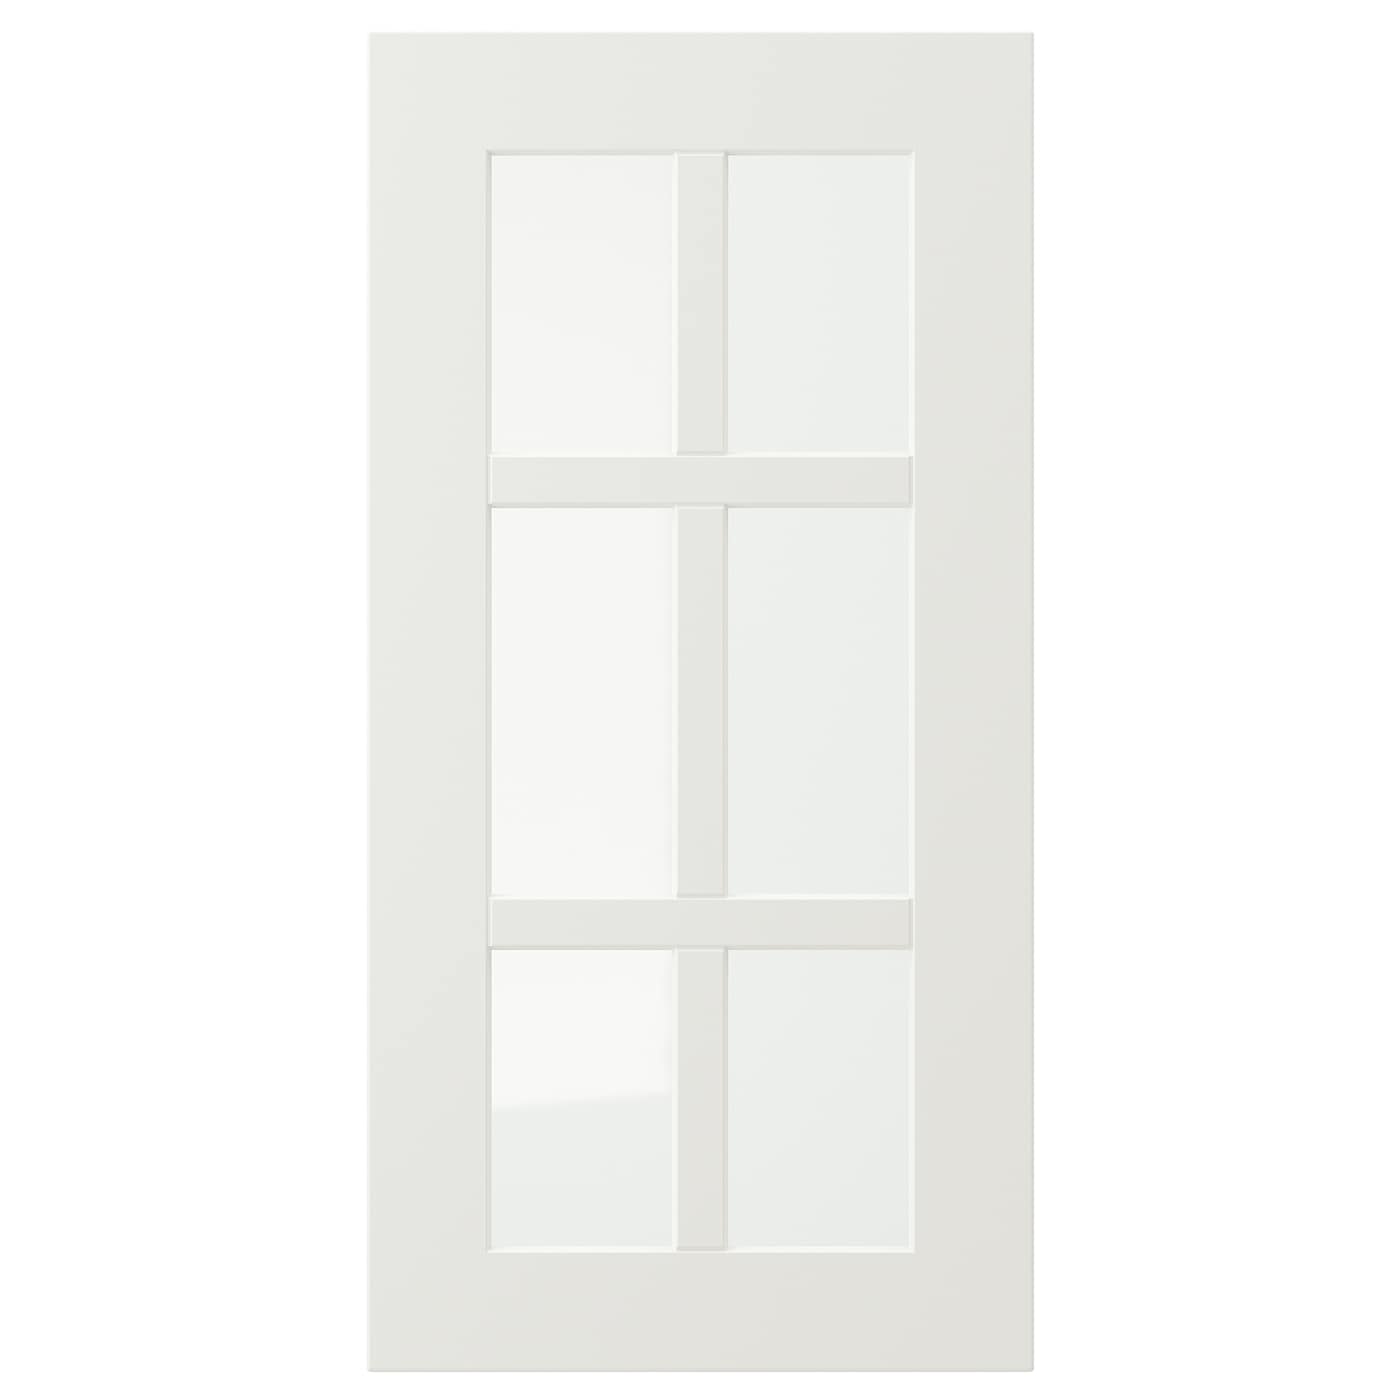 Дверца со стеклом - IKEA STENSUND, 60х30 см, белый, СТЕНСУНД ИКЕА